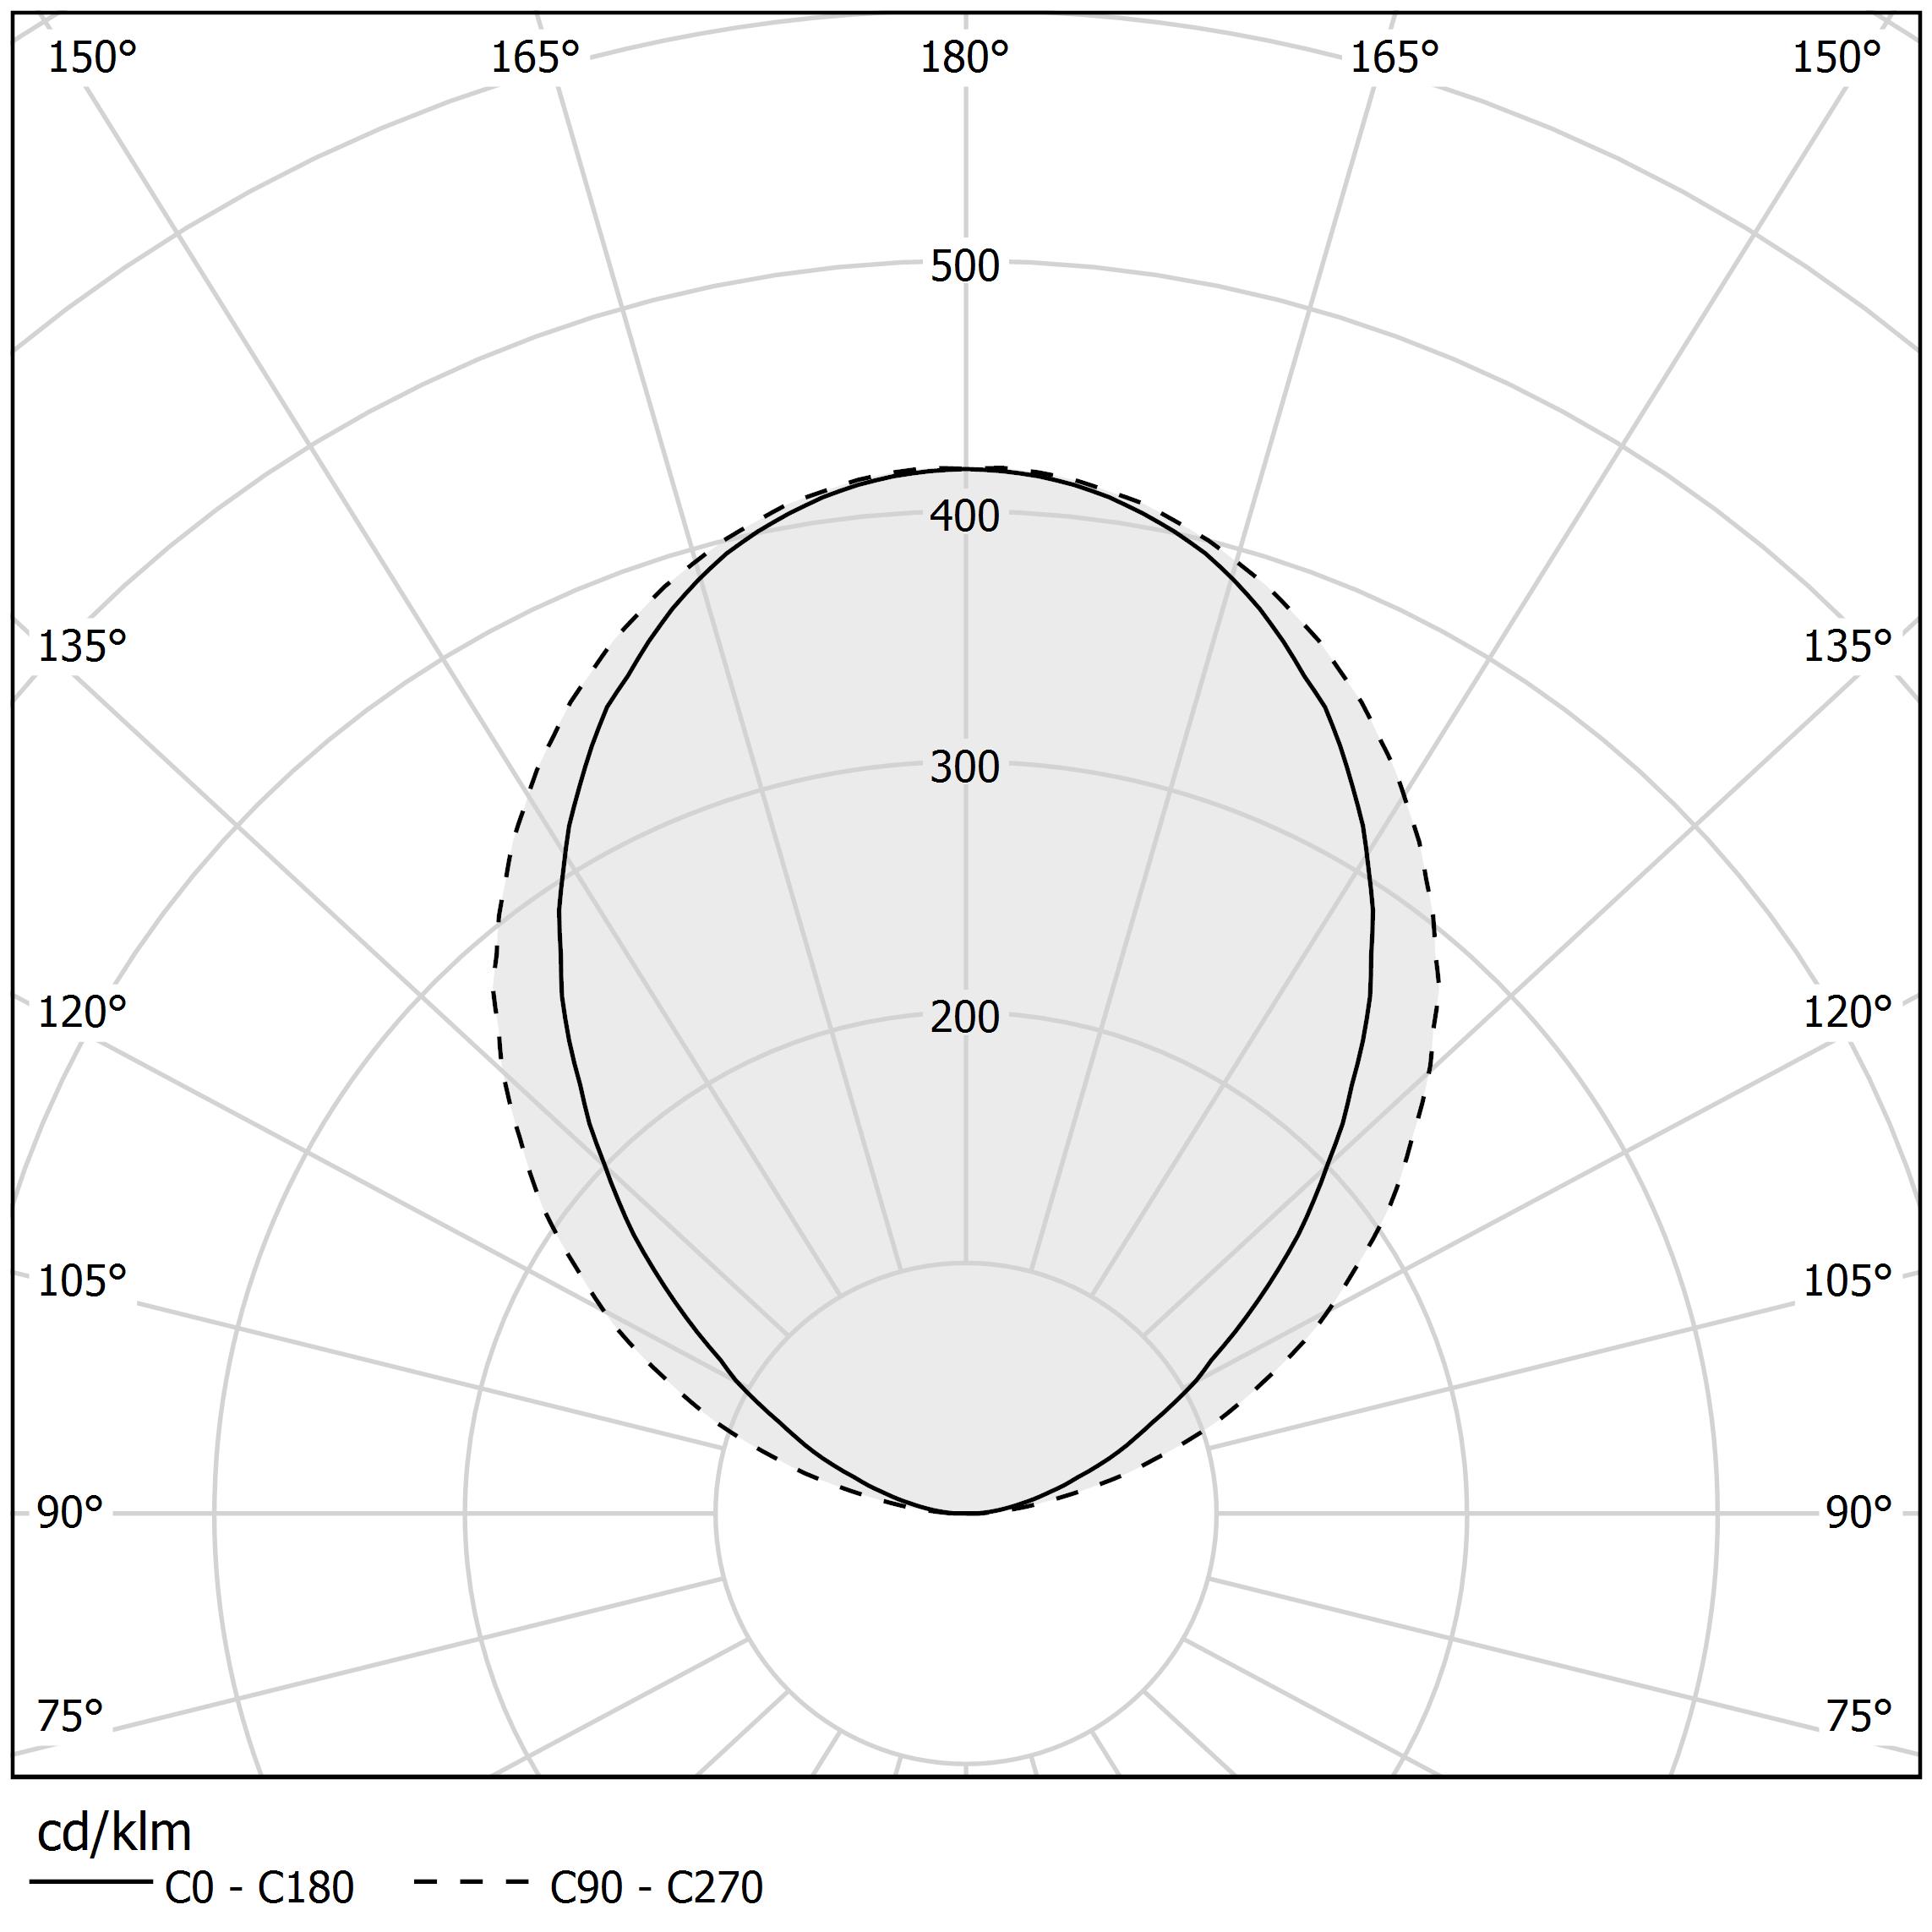 Polar diagram - VIISI - T02001.210.0402